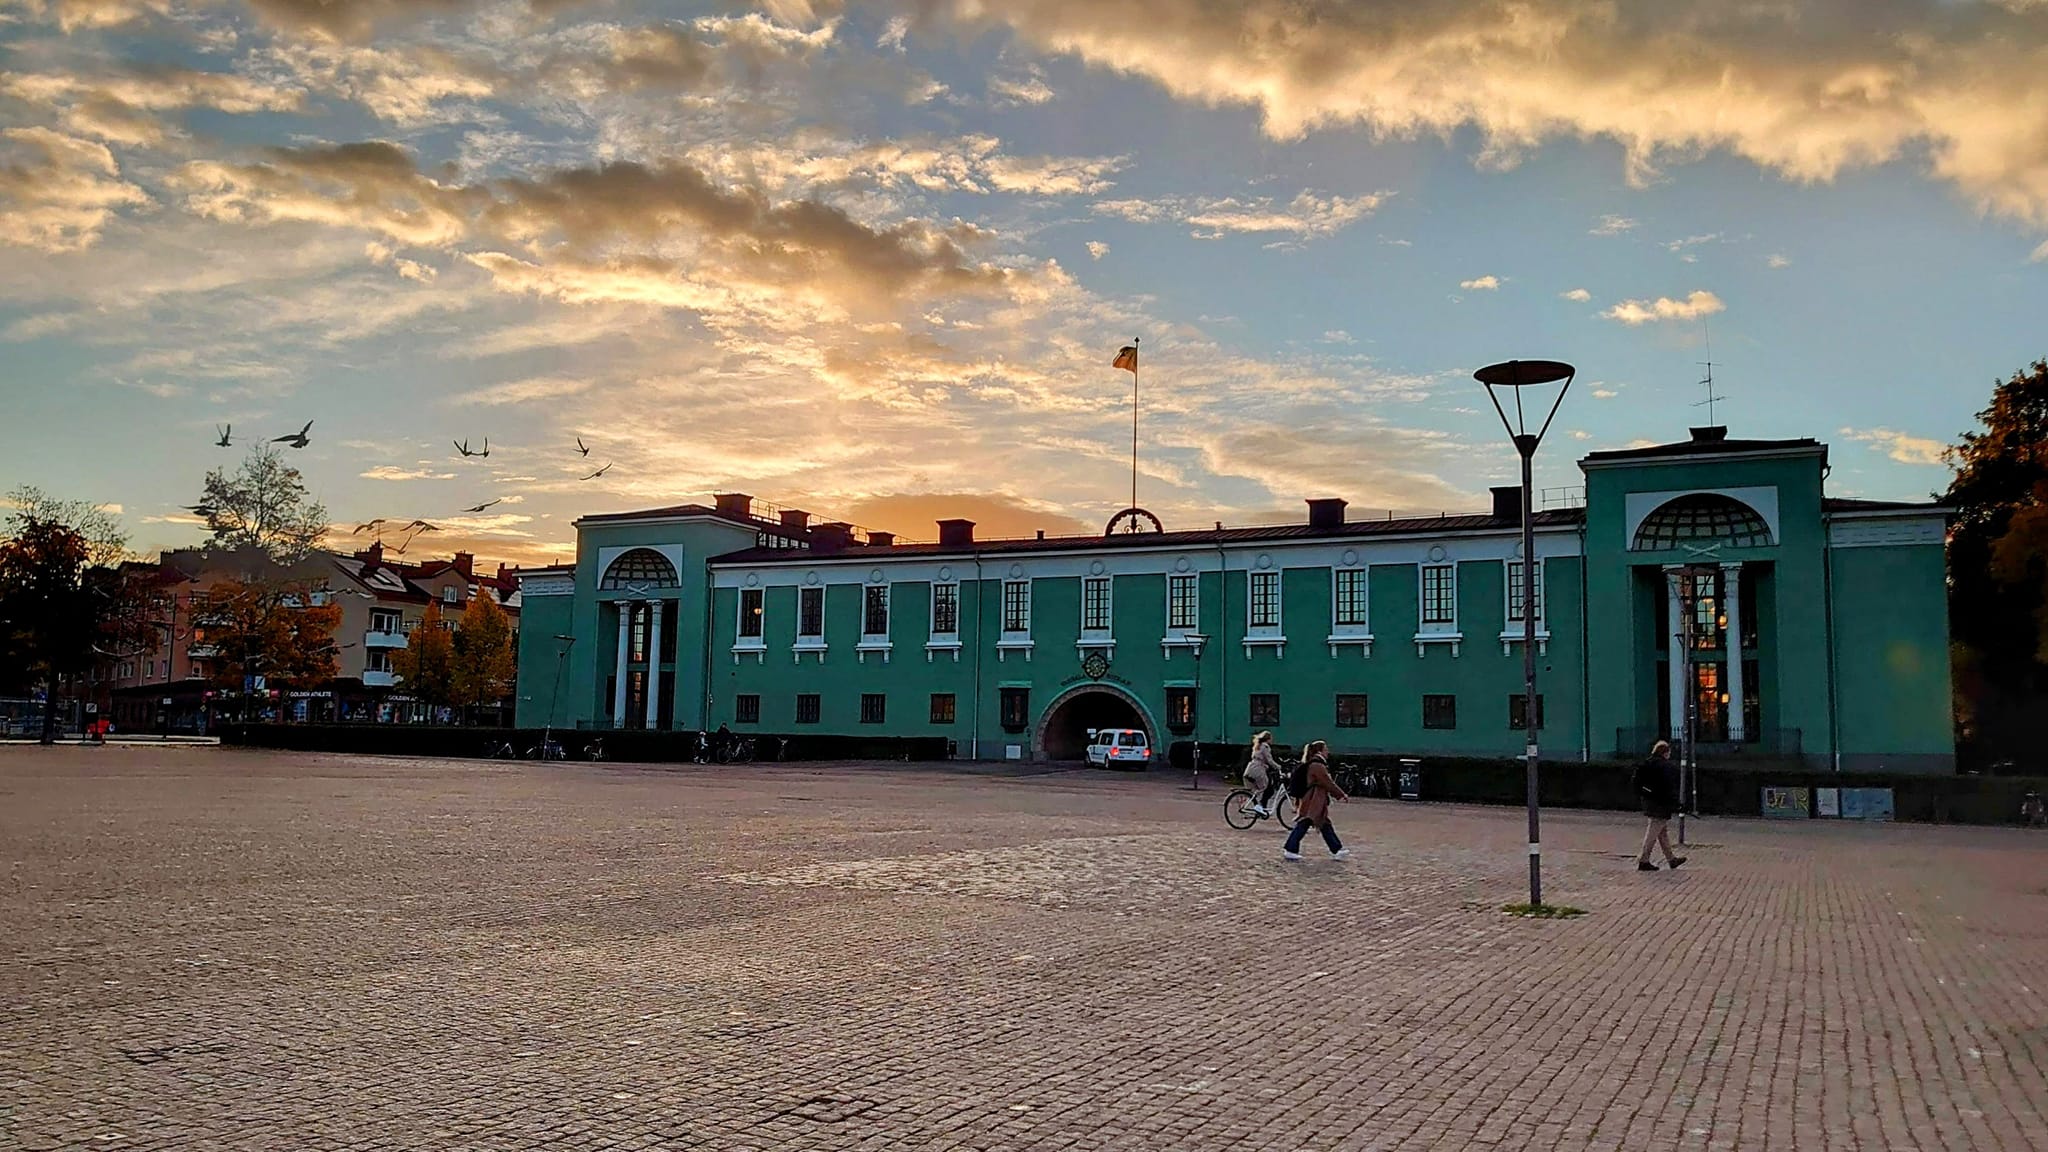 Vaksalaskolan i Uppsala och dess historik